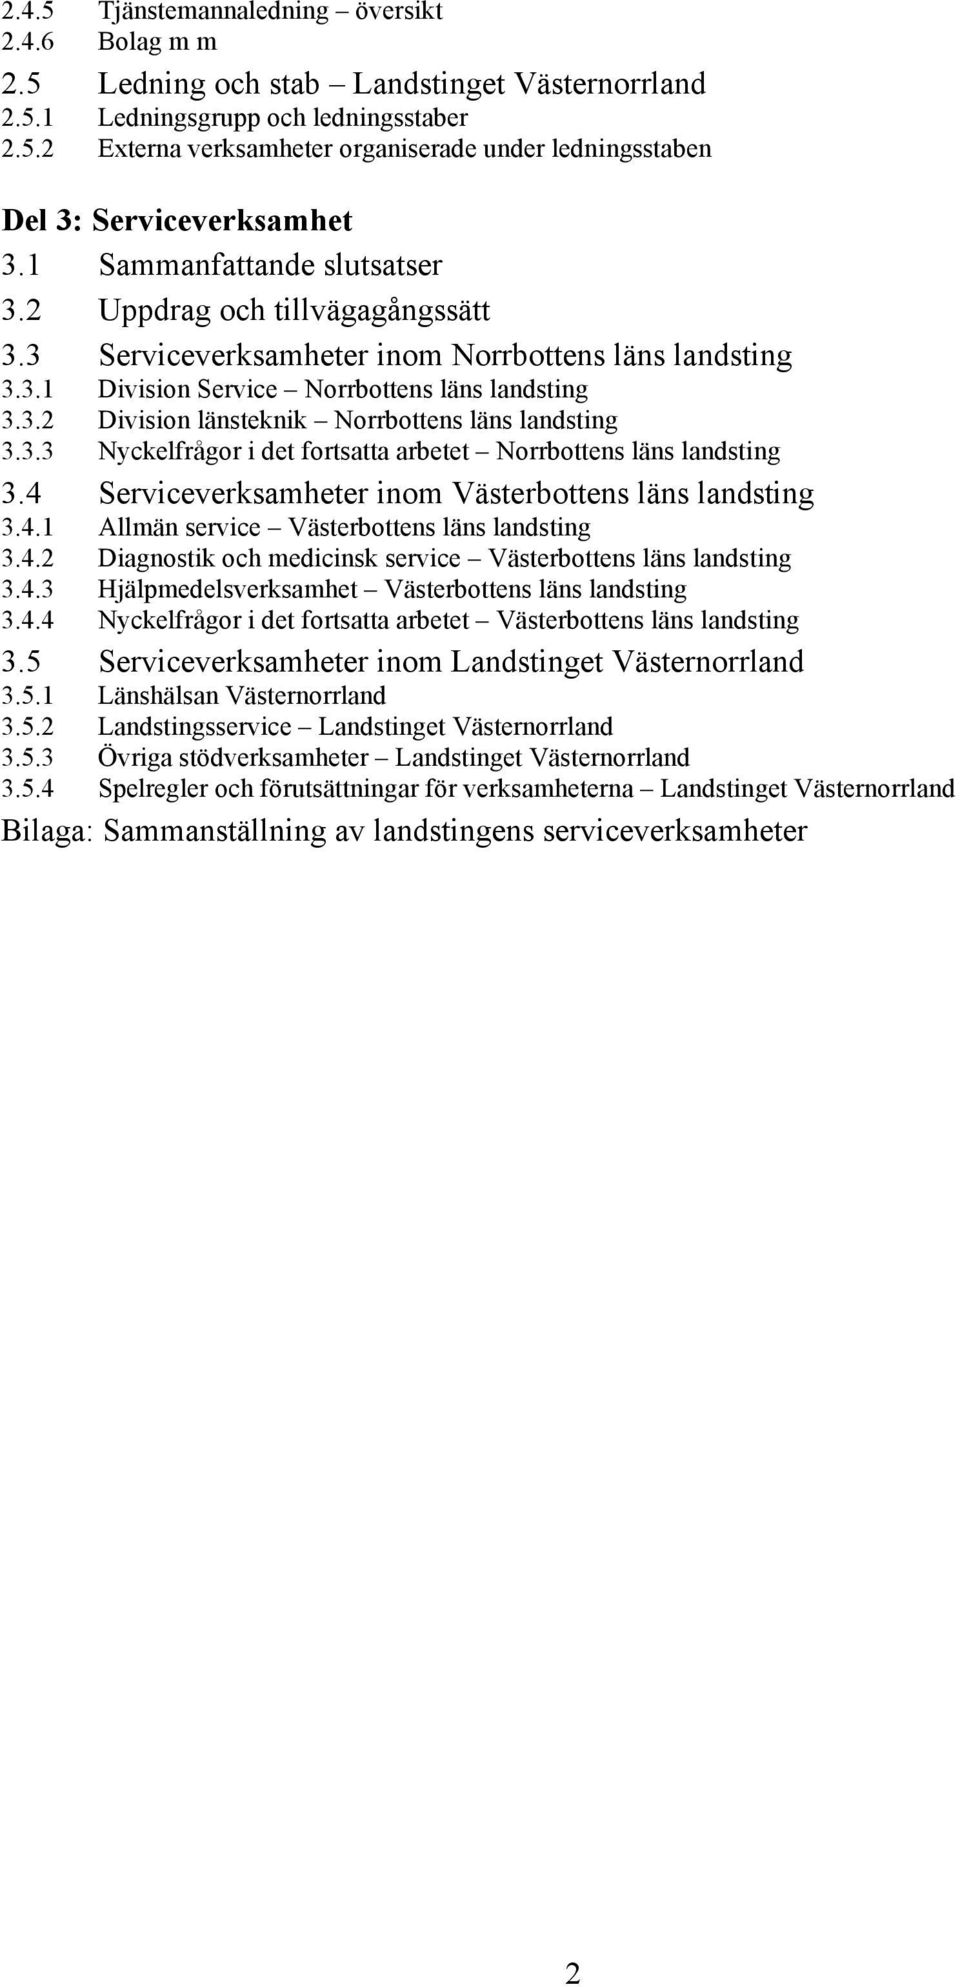 3.3 Nyckelfrågor i det fortsatta arbetet Norrbottens läns landsting 3.4 Serviceverksamheter inom Västerbottens läns landsting 3.4. Allmän service Västerbottens läns landsting 3.4.2 Diagnostik och medicinsk service Västerbottens läns landsting 3.